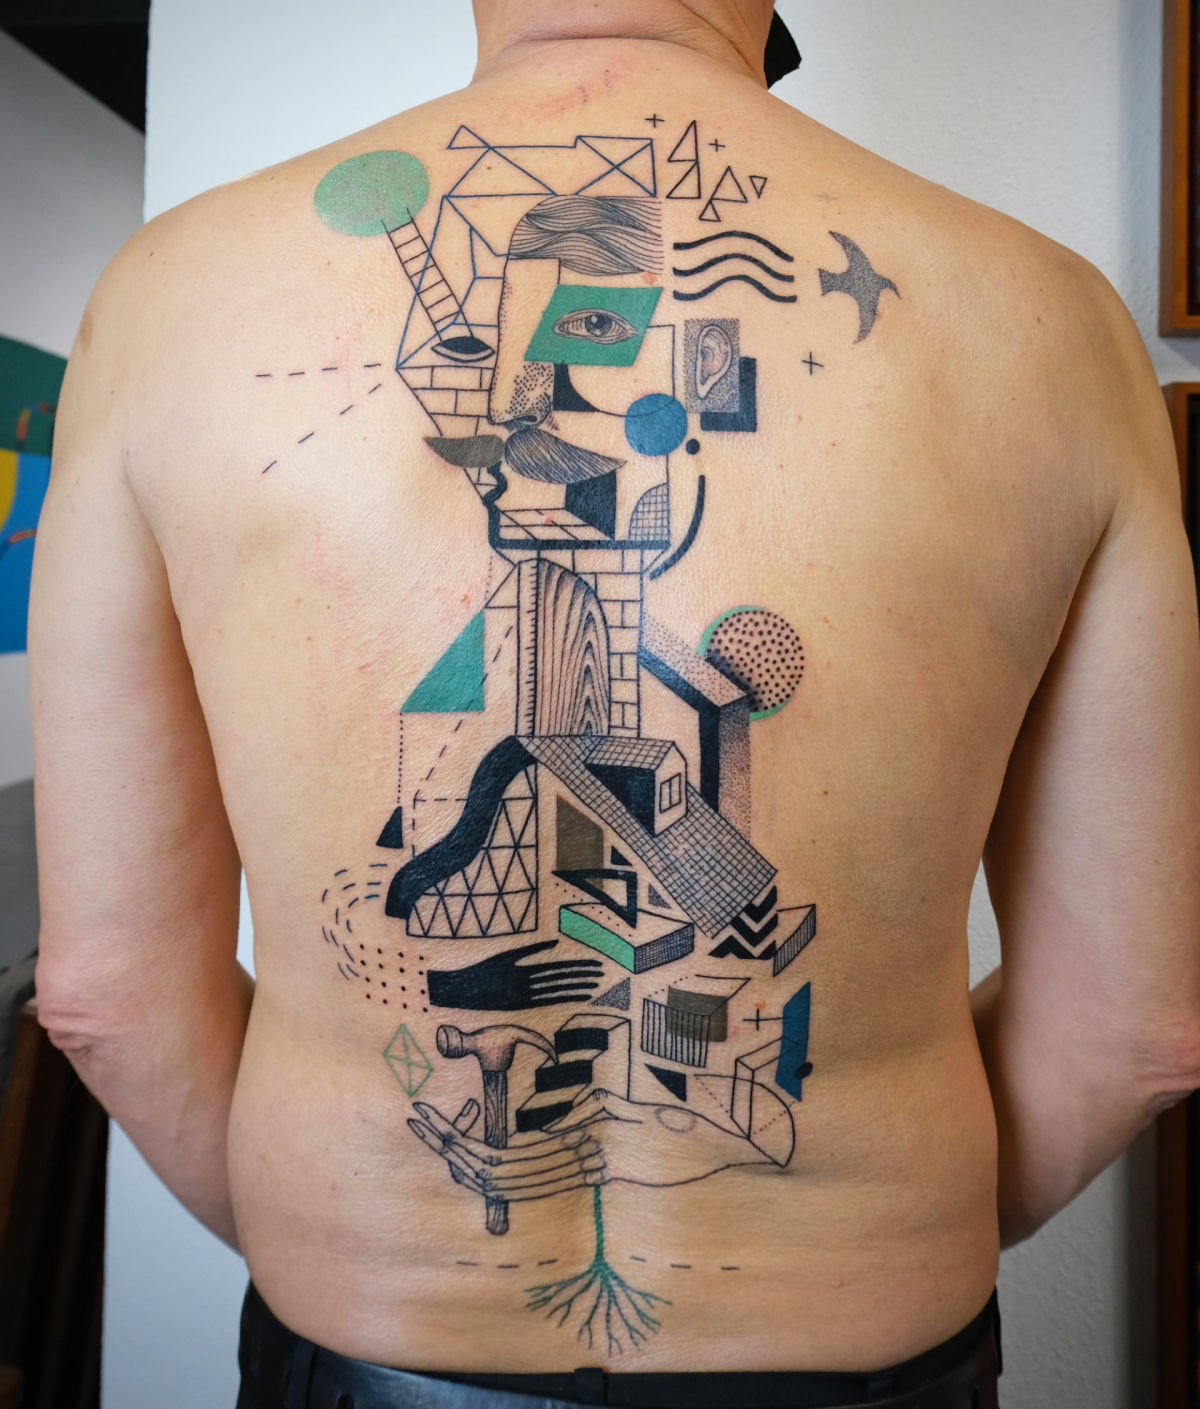 Tatuagens combinam figuras fragmentadas e detalhes geométricos em composições surreais 03